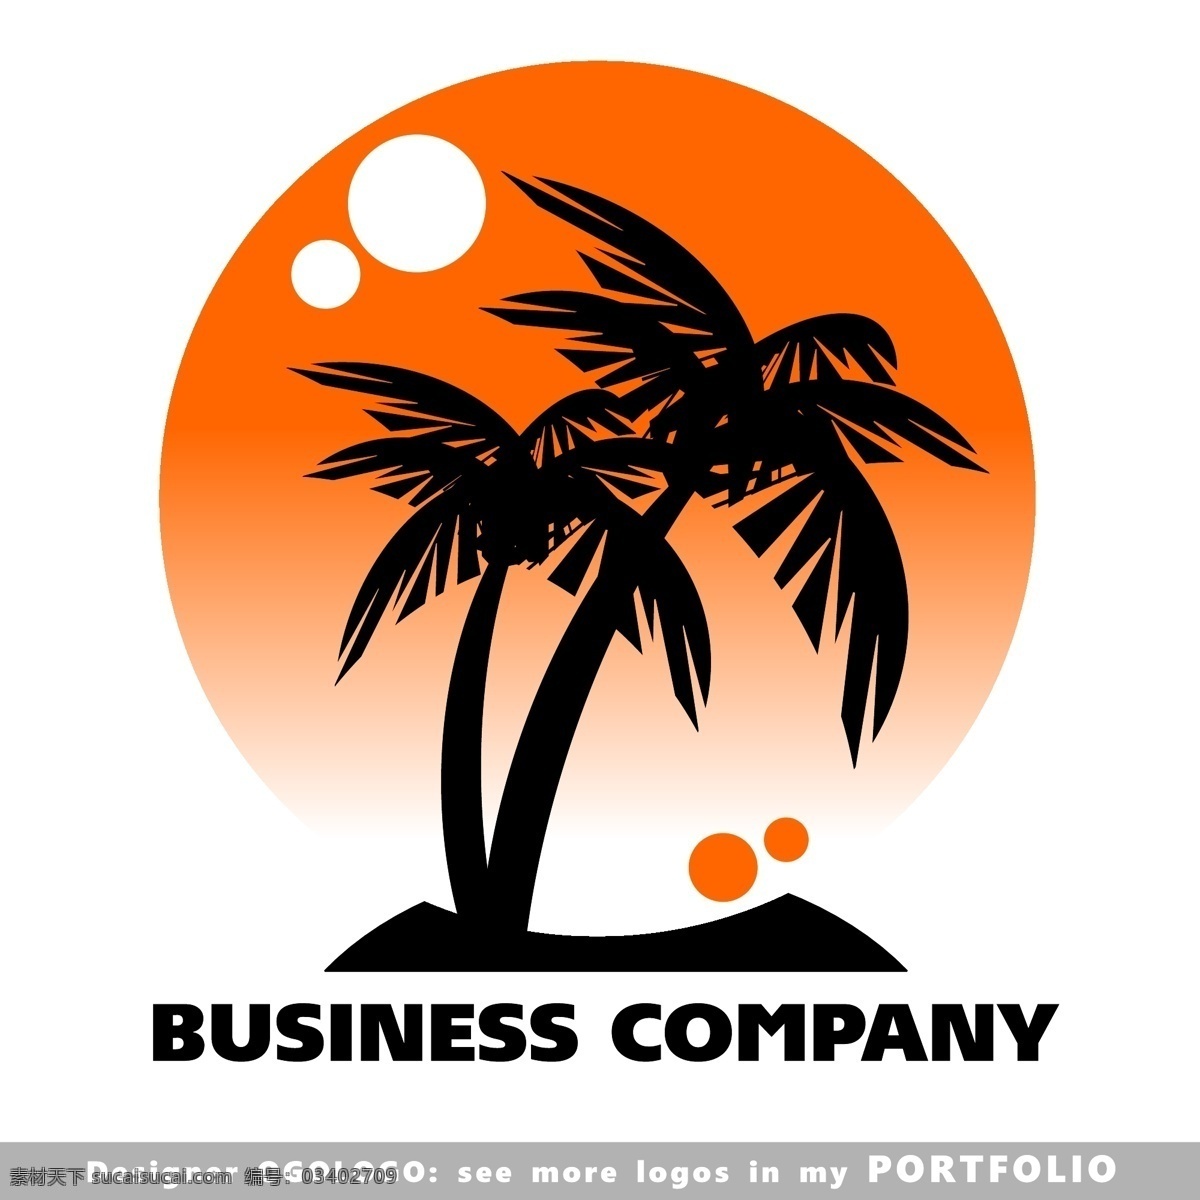 椰树logo 椰树 夏日 旅游 logo logo图形 标志设计 公司logo 企业logo 创意 标志图标 矢量素材 白色